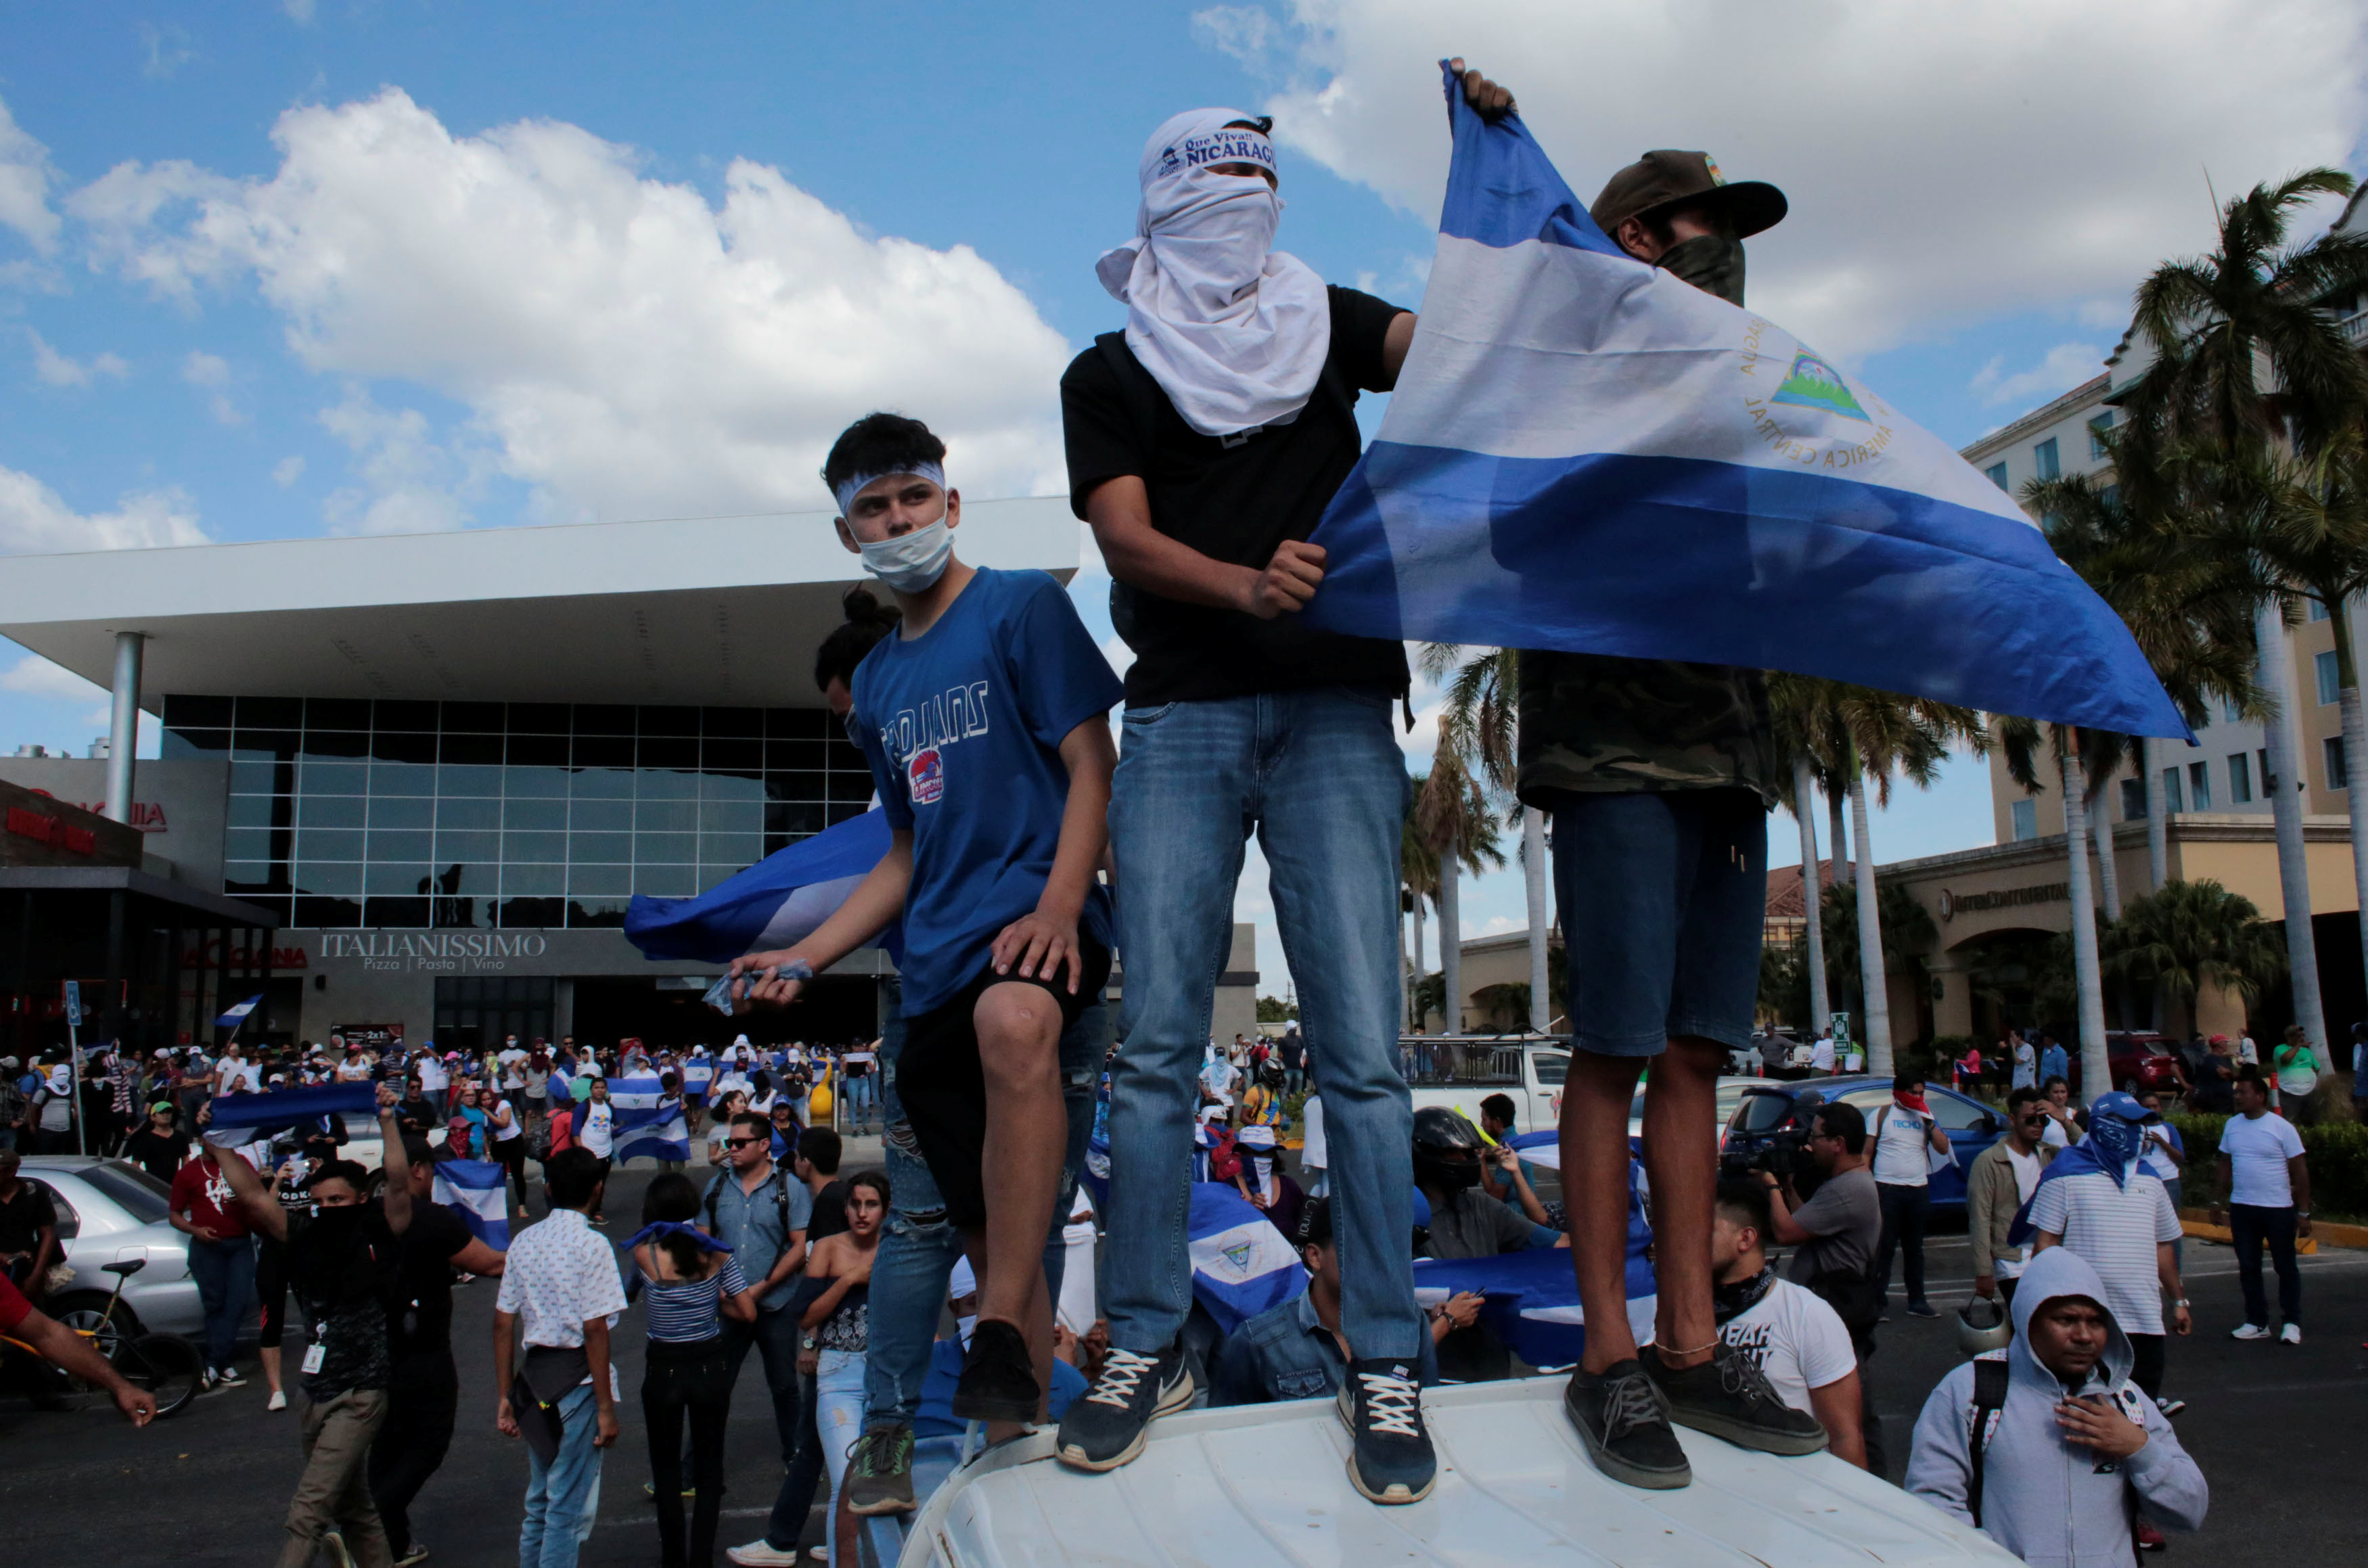 OEA convoca a sesión extraordinaria para analizar la situación en Nicaragua